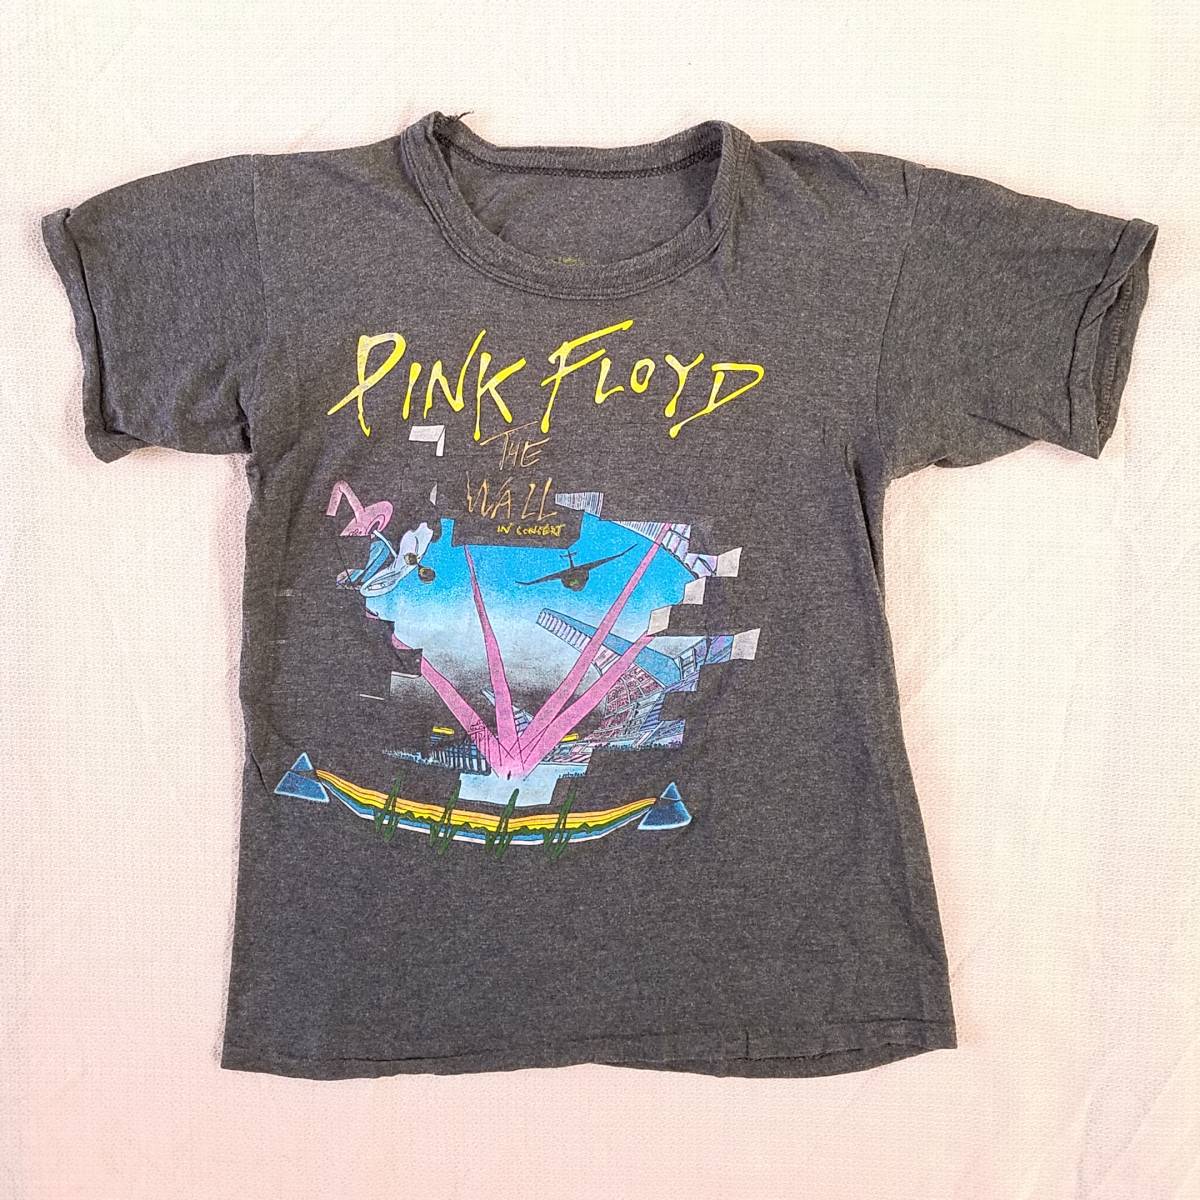 人気商品は FLOYD(ピンク・フロイド) 80sヴィンテージ『PINK 魅惑の